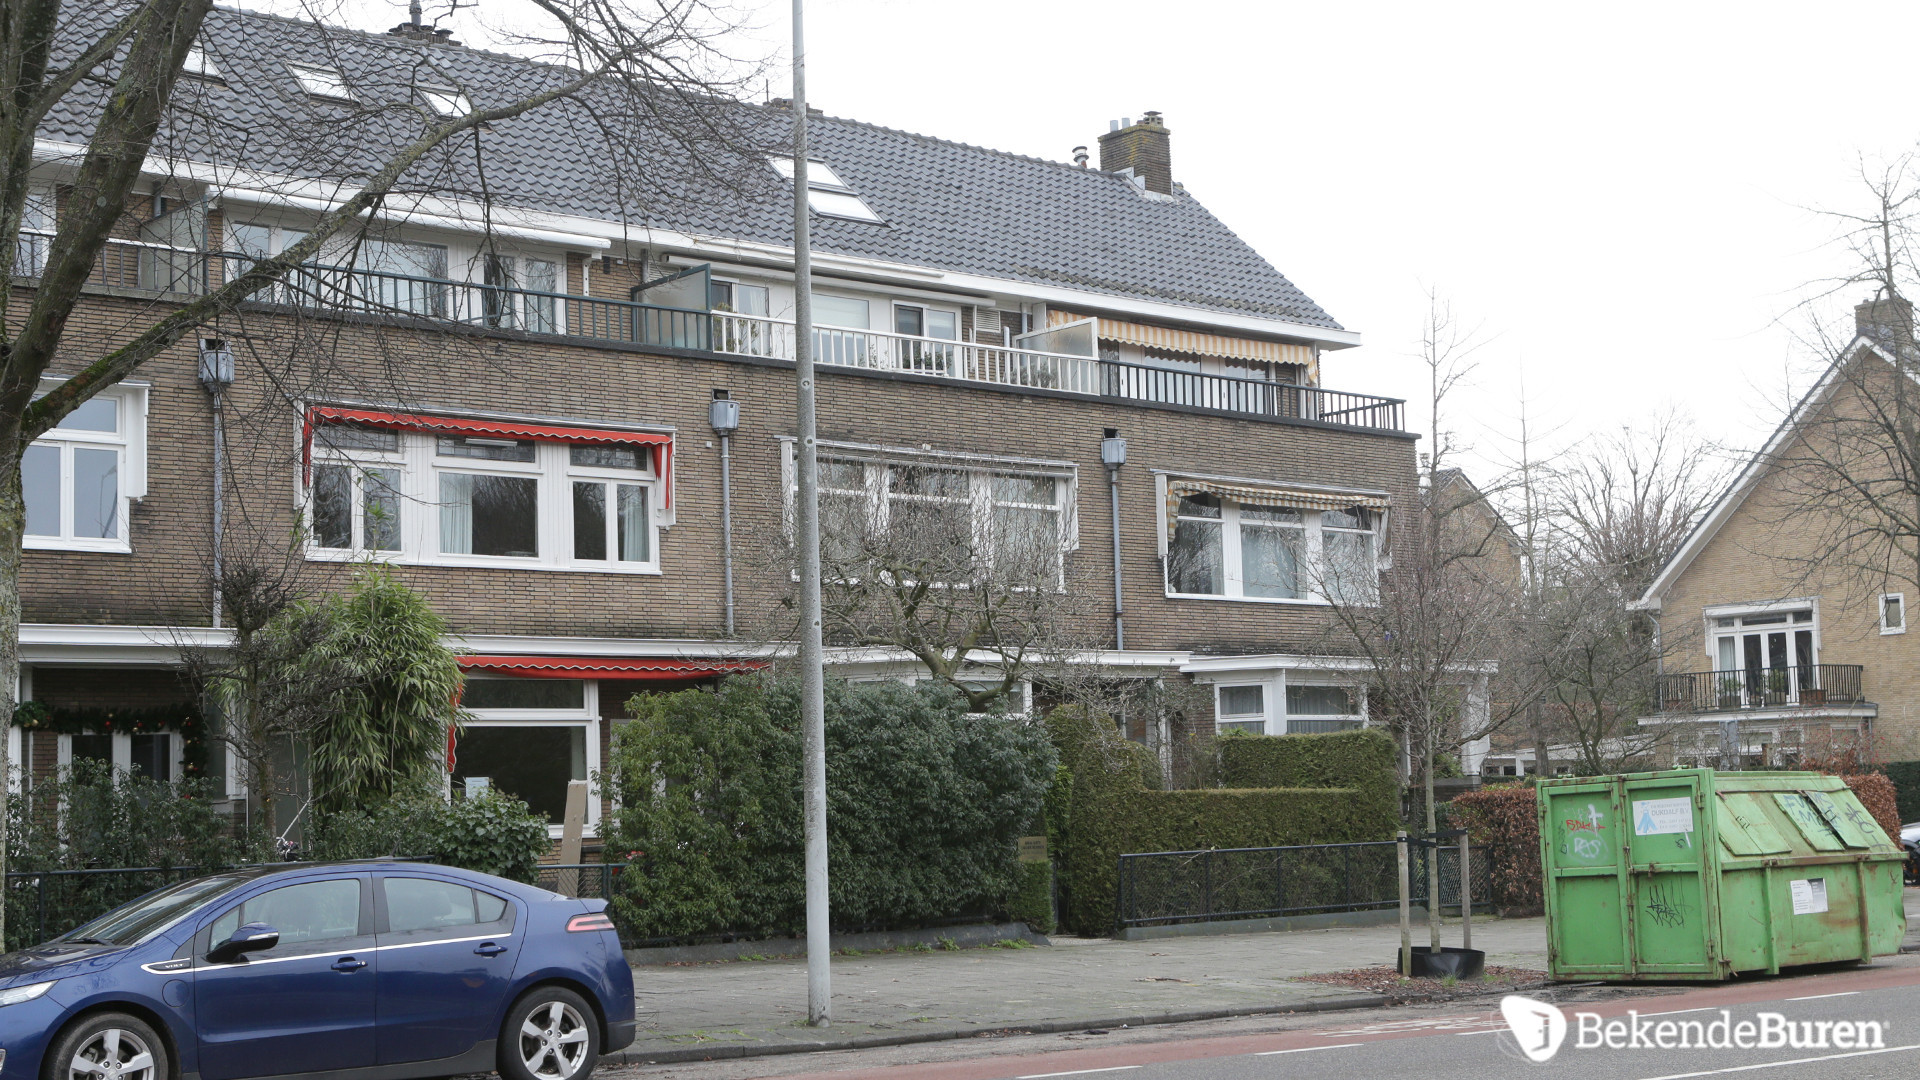 Martijn Krabbe verbouwt zijn woning zonder kijken. Zie fotos 2